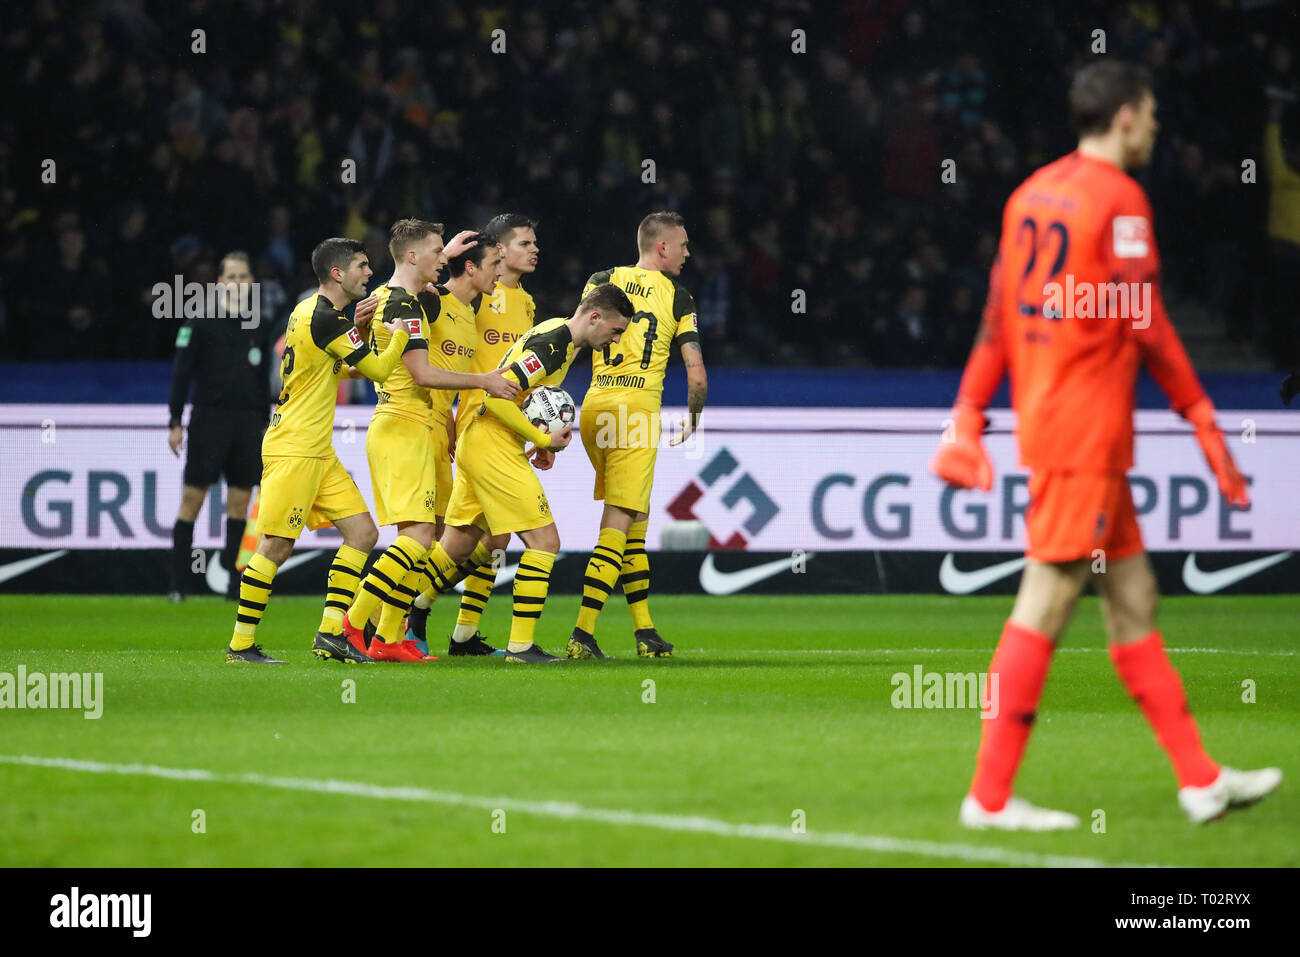 Berlino, Germania. 16 Mar, 2019. Dortmund i giocatori di celebrare il punteggio durante un match della Bundesliga tra Hertha BSC e il Borussia Dortmund, a Berlino, Germania, il 16 marzo 2019. Dortmund ha vinto 3-2. Credito: Shan Yuqi/Xinhua/Alamy Live News Foto Stock